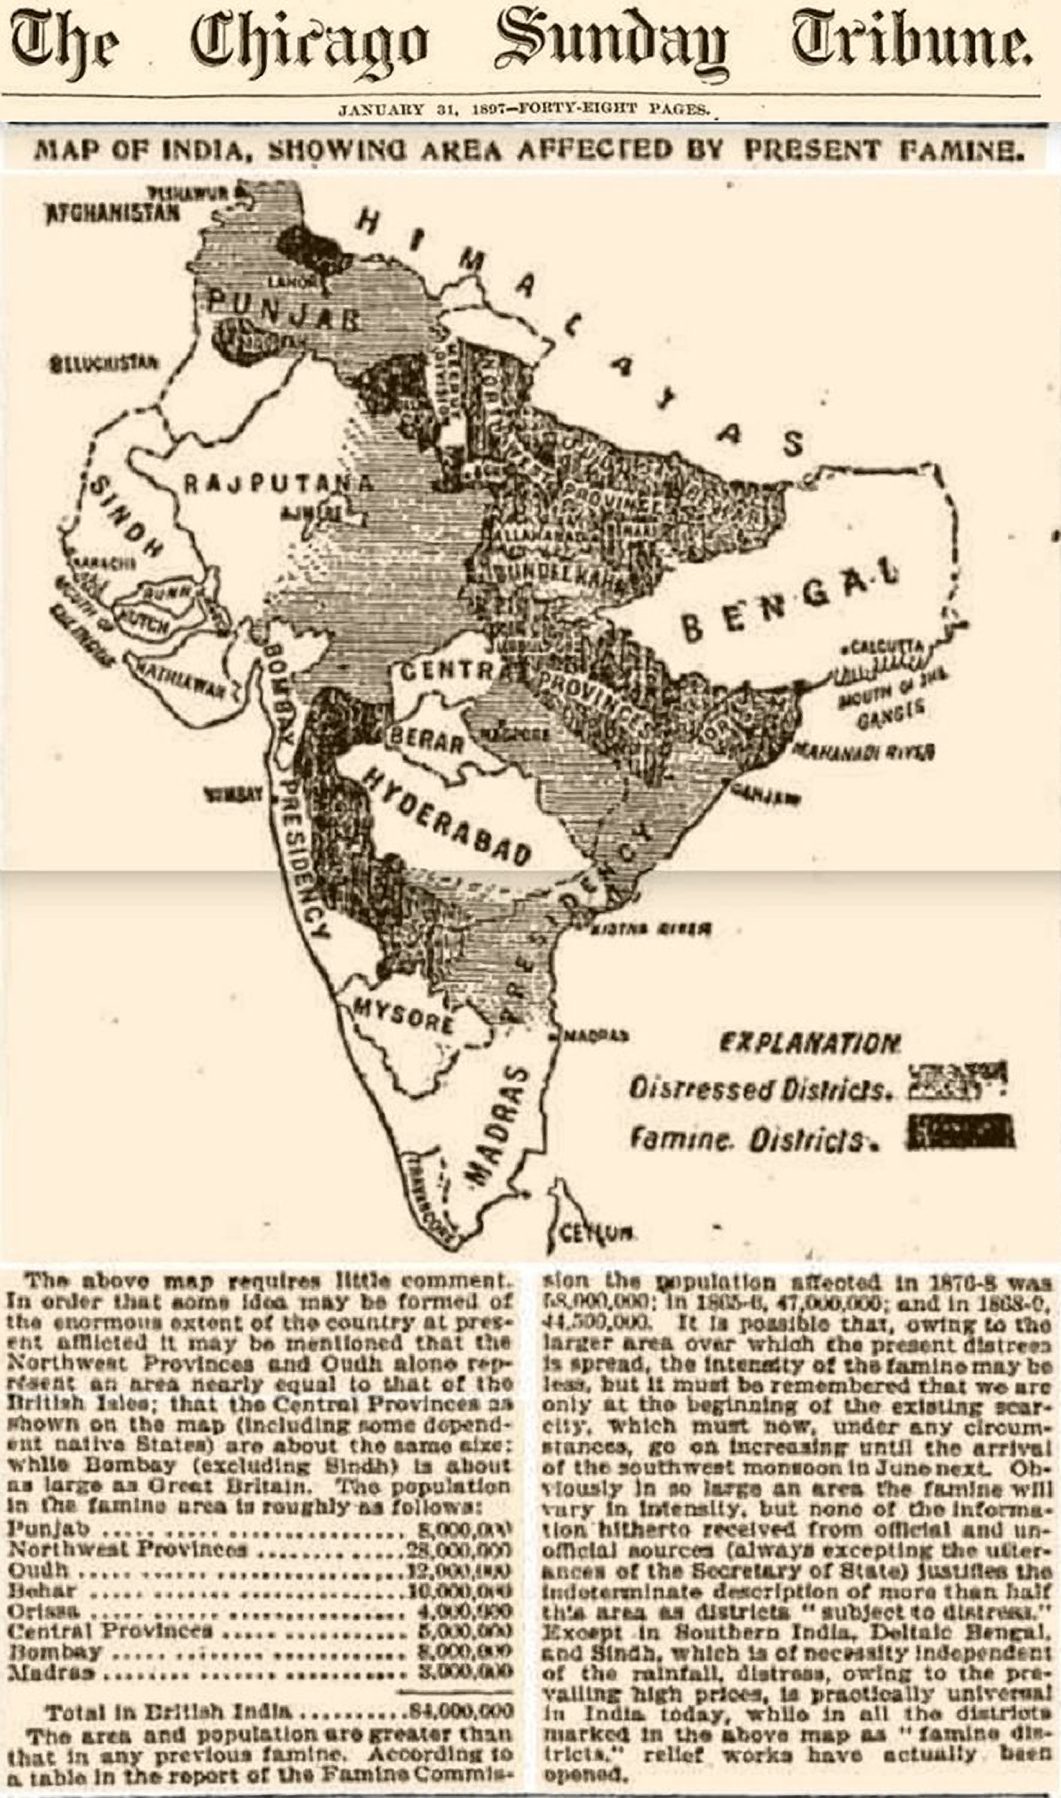 Chicago Tribune India Famine Map